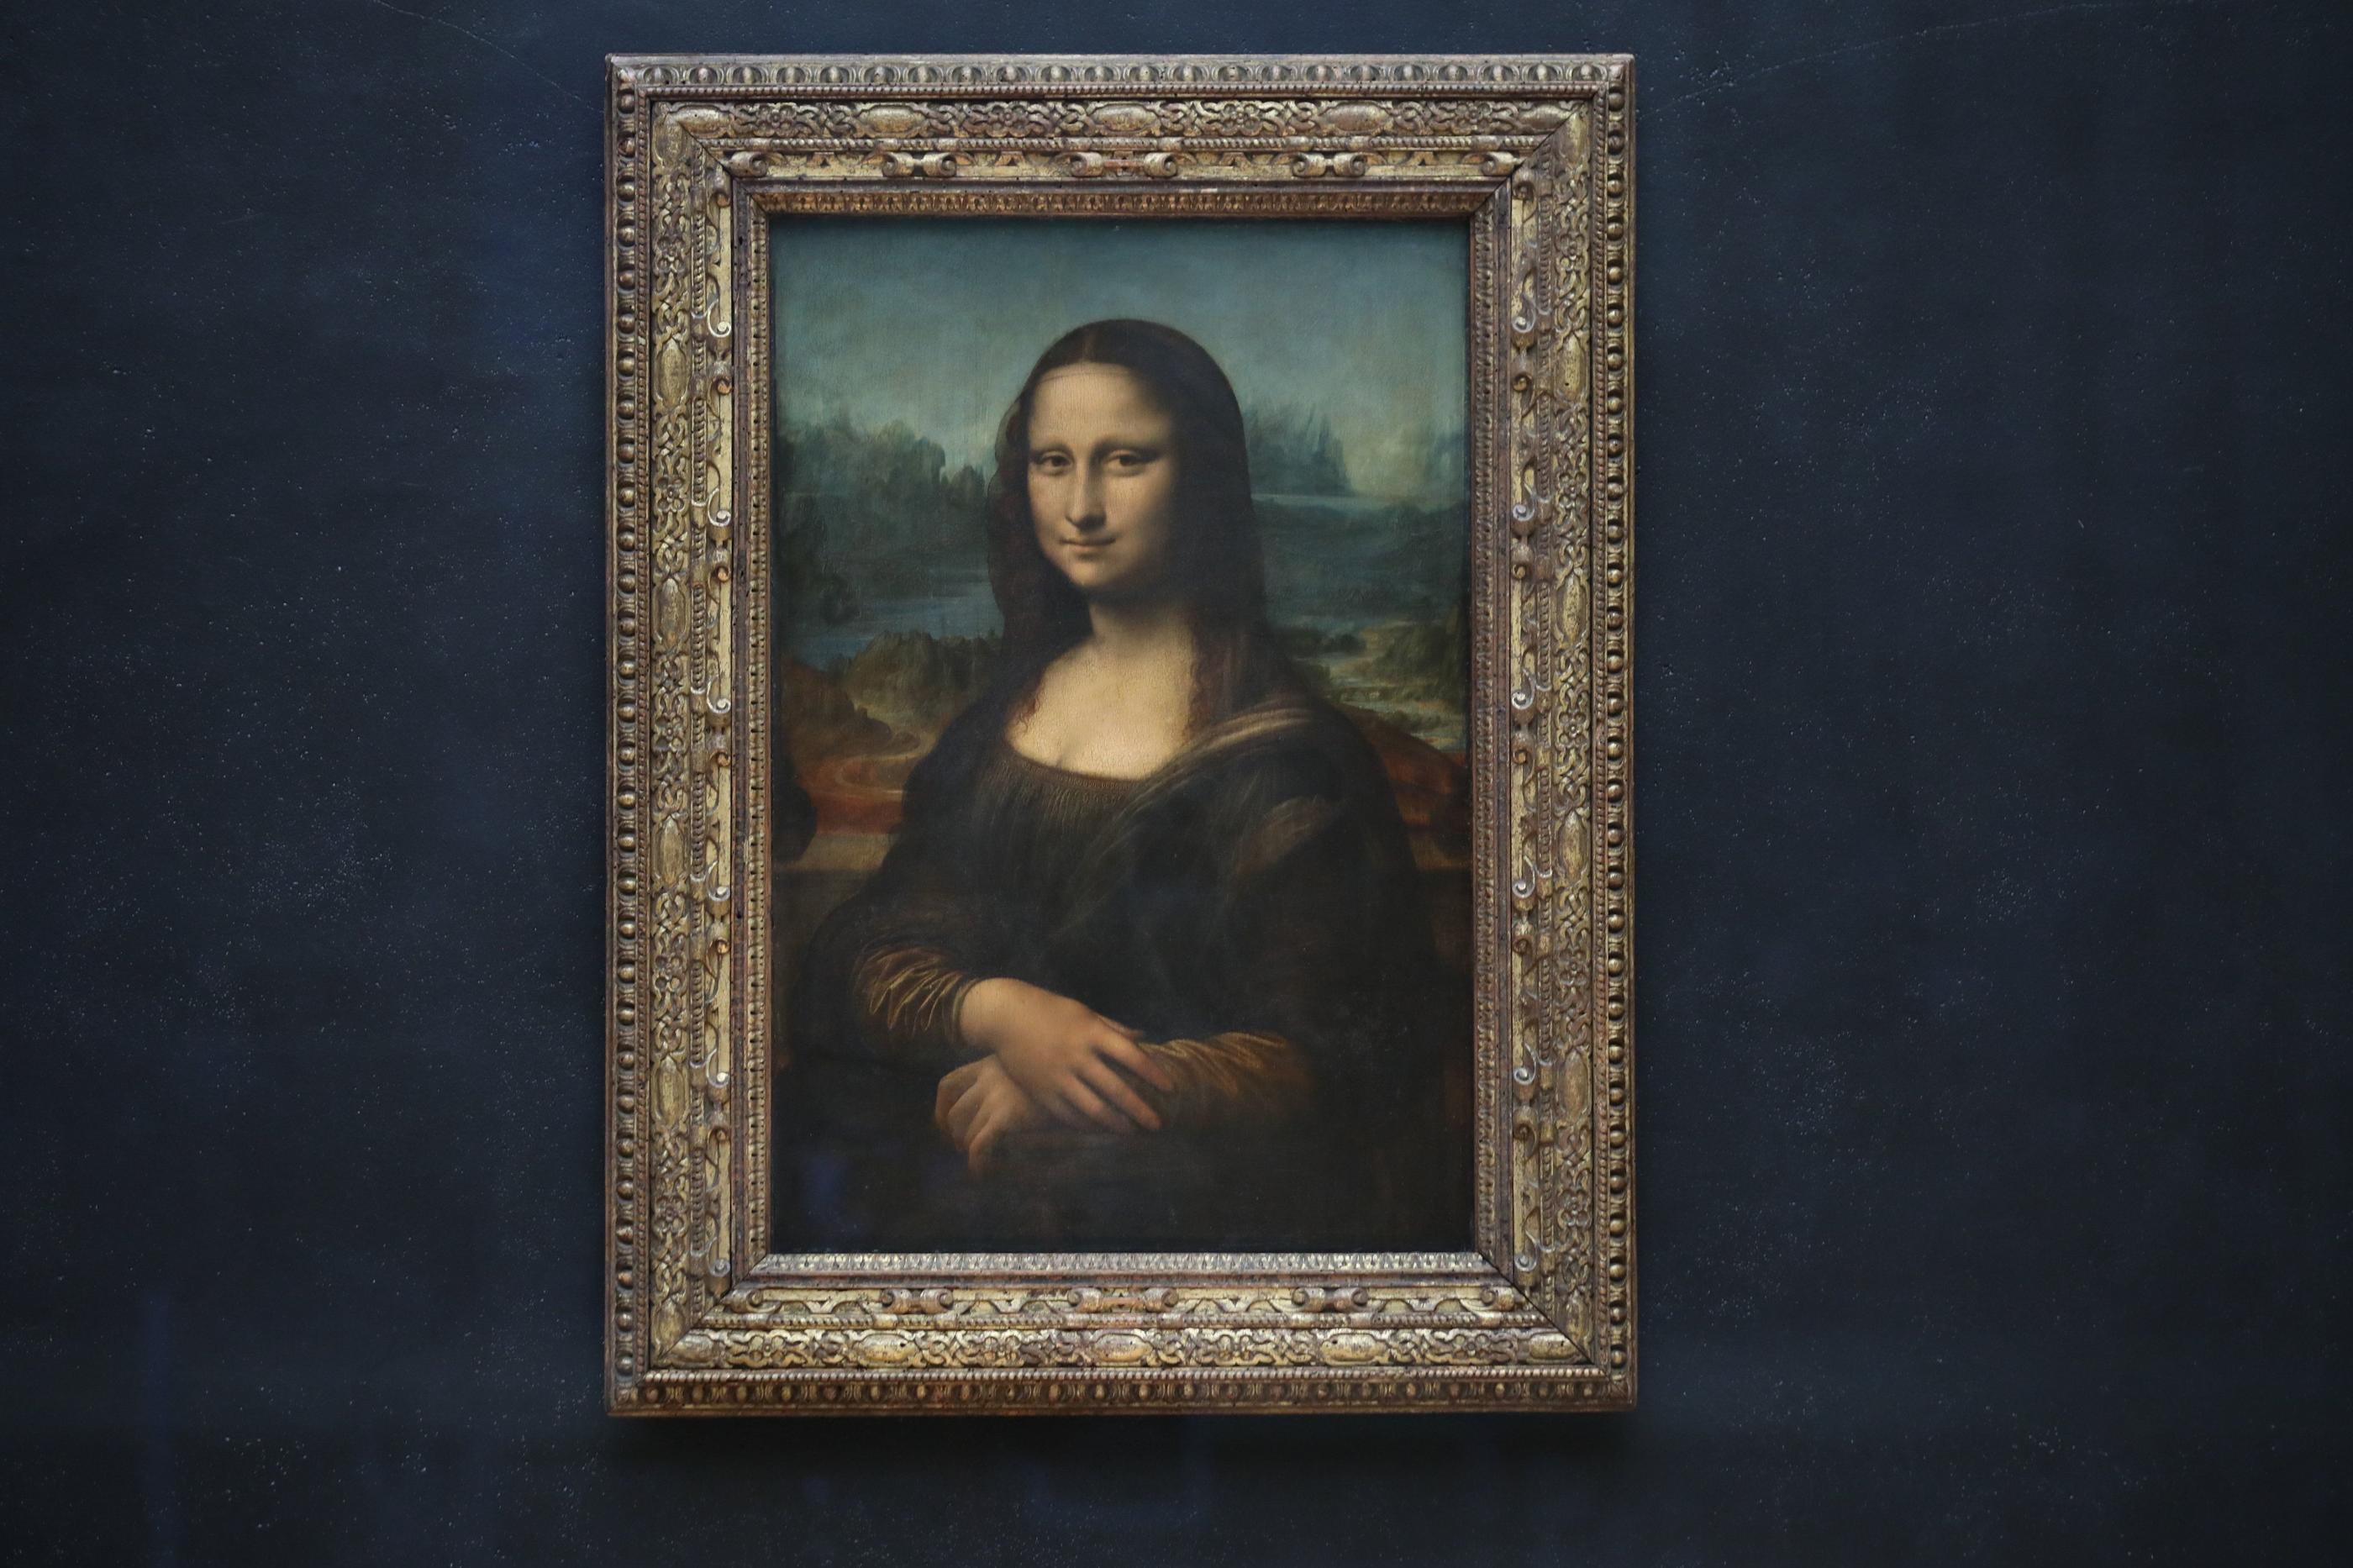 Une association née en 2021, qui prétend représenter des descendants de Léonard de Vinci, a saisi le Conseil d'Etat ce jeudi 25 avril, afin que le tableau de La Joconde soit «radié» de l’inventaire du musée du Louvre. LP/Arnaud Journois